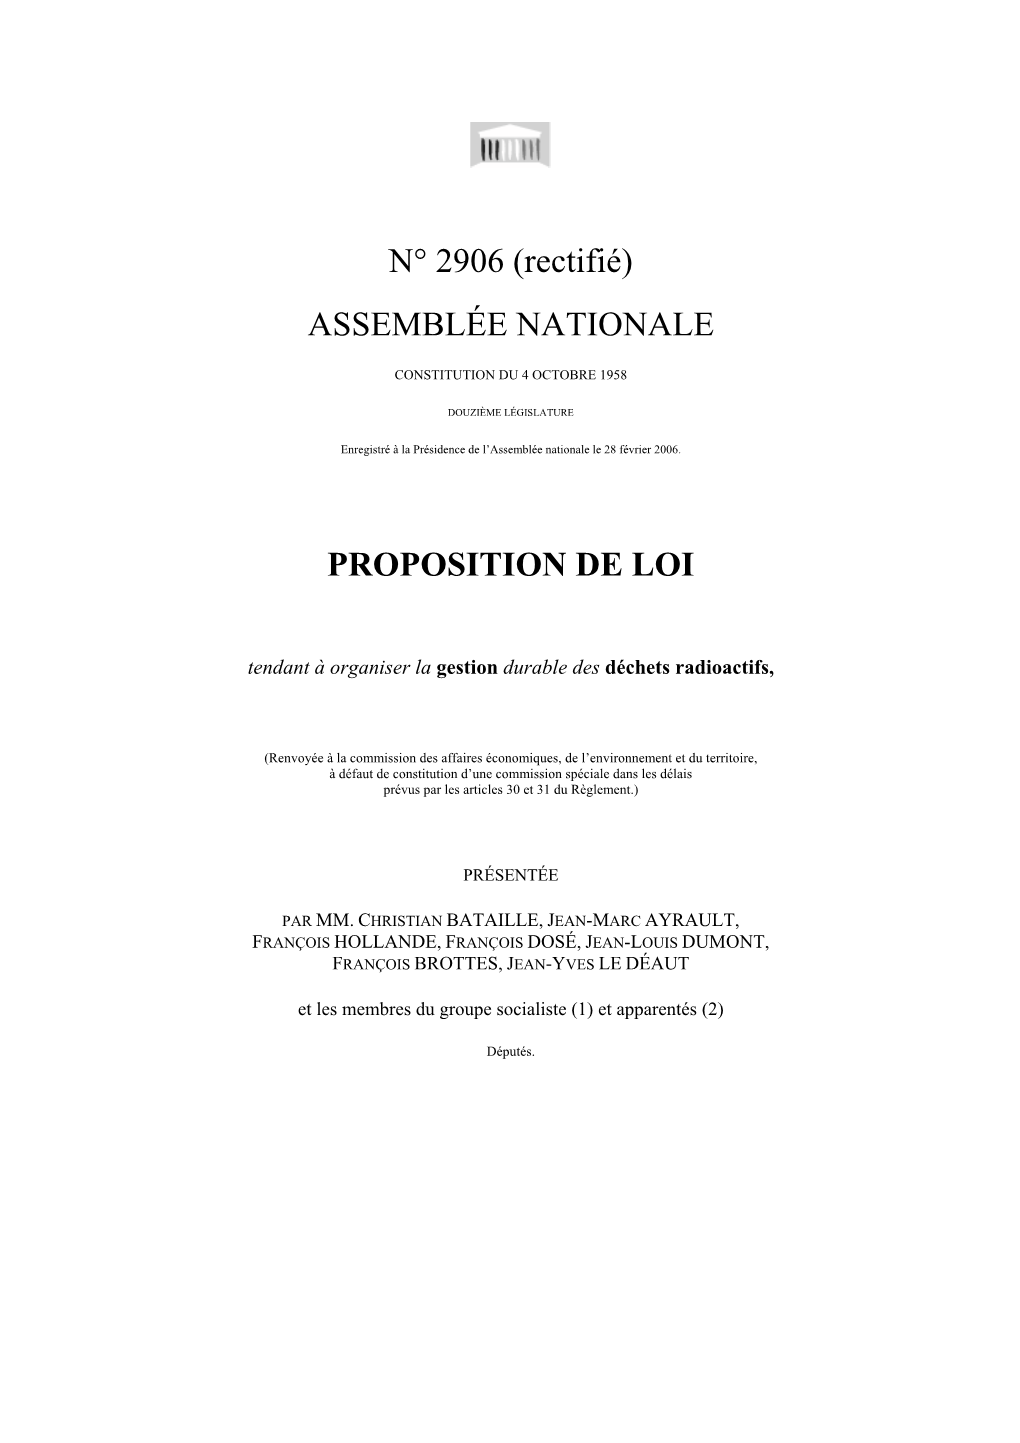 N° 2906 (Rectifié) ASSEMBLÉE NATIONALE PROPOSITION DE